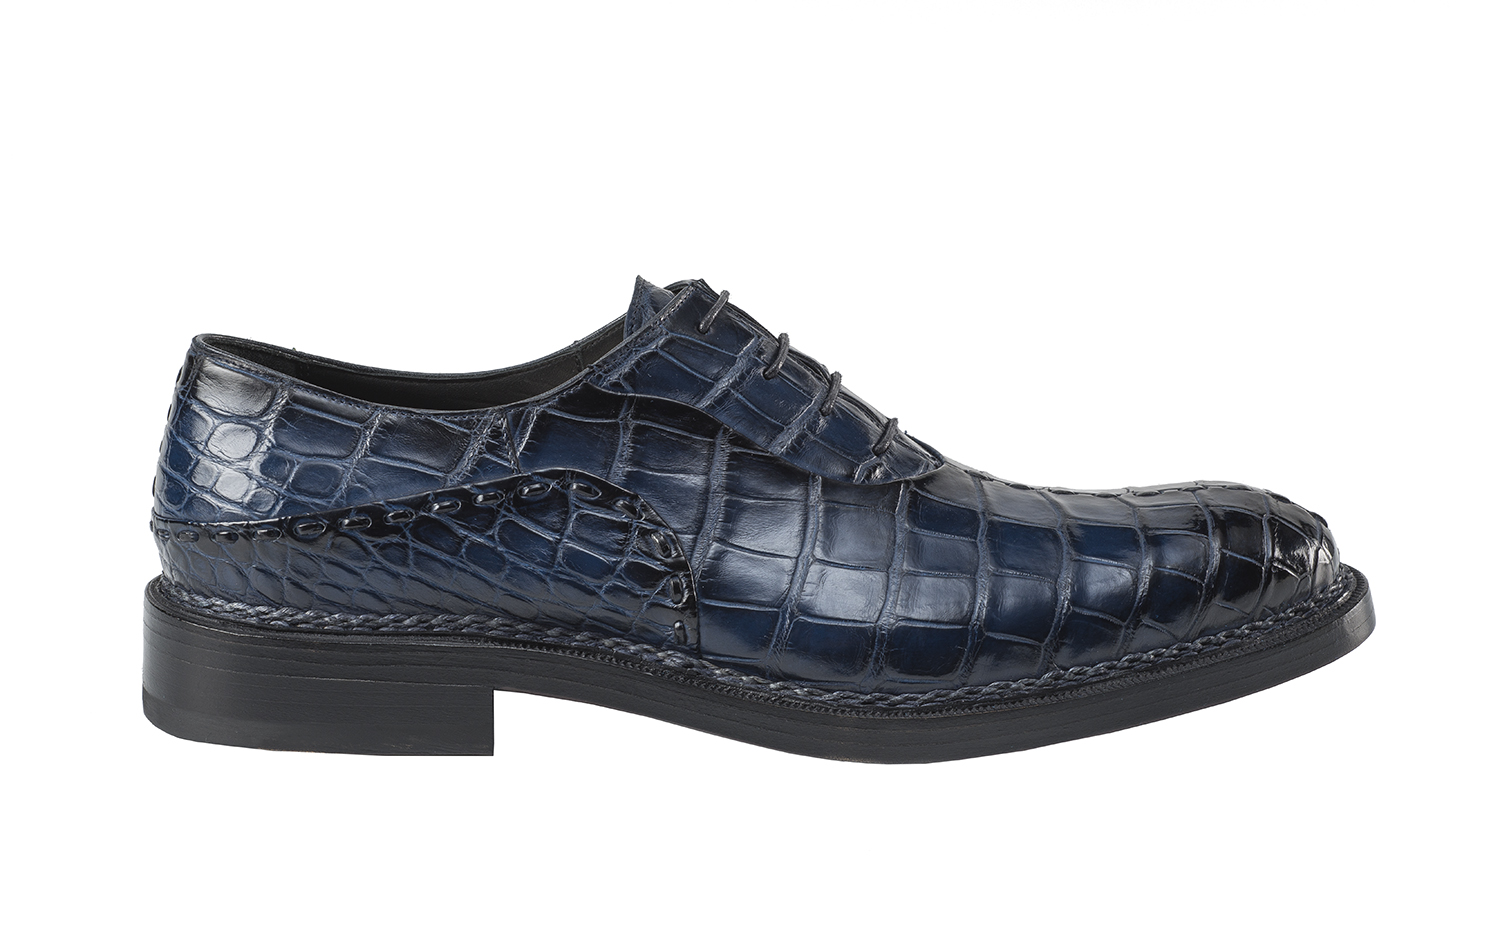 EB-ETTORE BUGATTI Bespoke shoe collection_Scarpa Atlantic